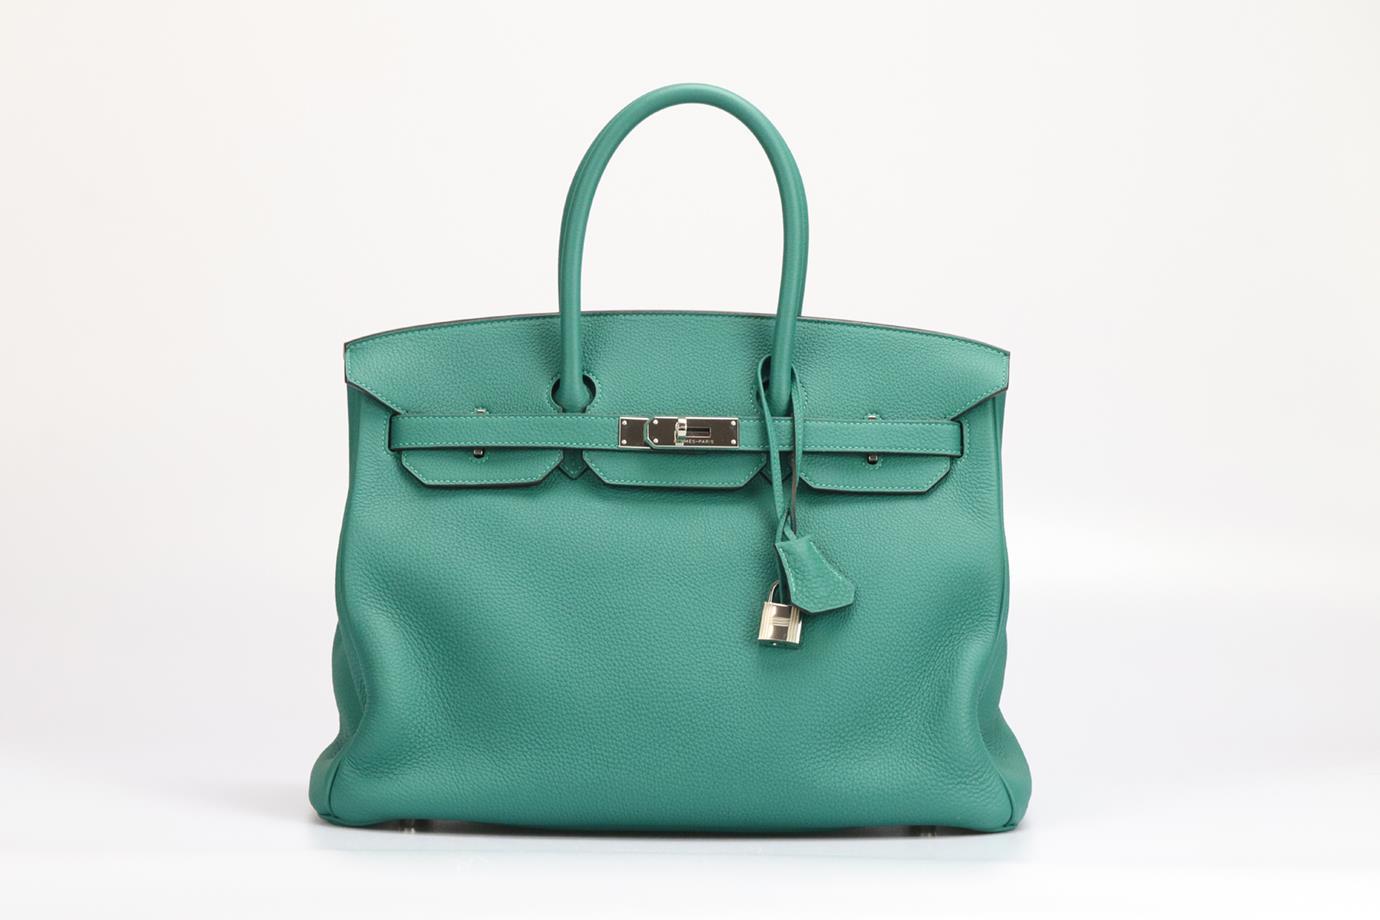 <ul>
<li>Hermès 2013 Birkin 35Cm Maurice Leather Bag.</li>
<li>Green.</li>
<li>Twist lock fastening - Front.</li>
<li>Does not come with - dustbag or box.</li>
<li>Model: Birkin 35.</li>
<li>Made in France, this 2013 Hermès Birkin 35cm handbag has